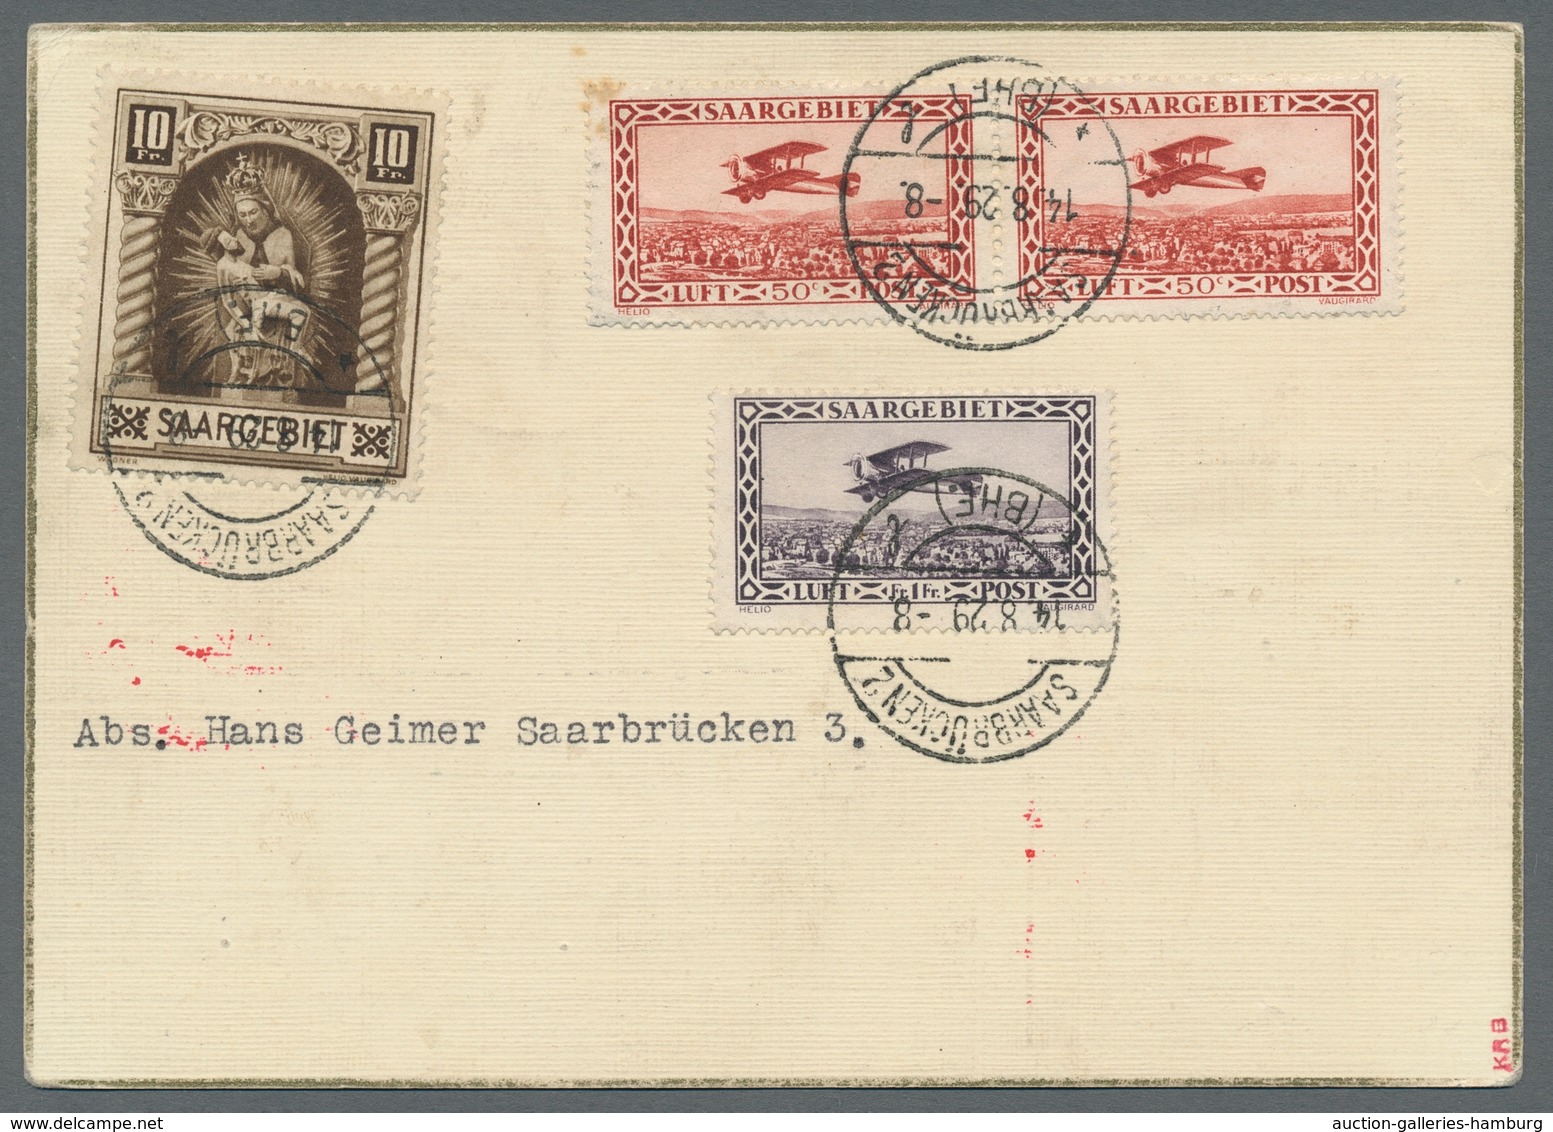 Zeppelinpost Deutschland: 1929 - Weltrundfahrt/Etappe Friedrichshafen-Lakehurst, Hochwertig Frankier - Airmail & Zeppelin